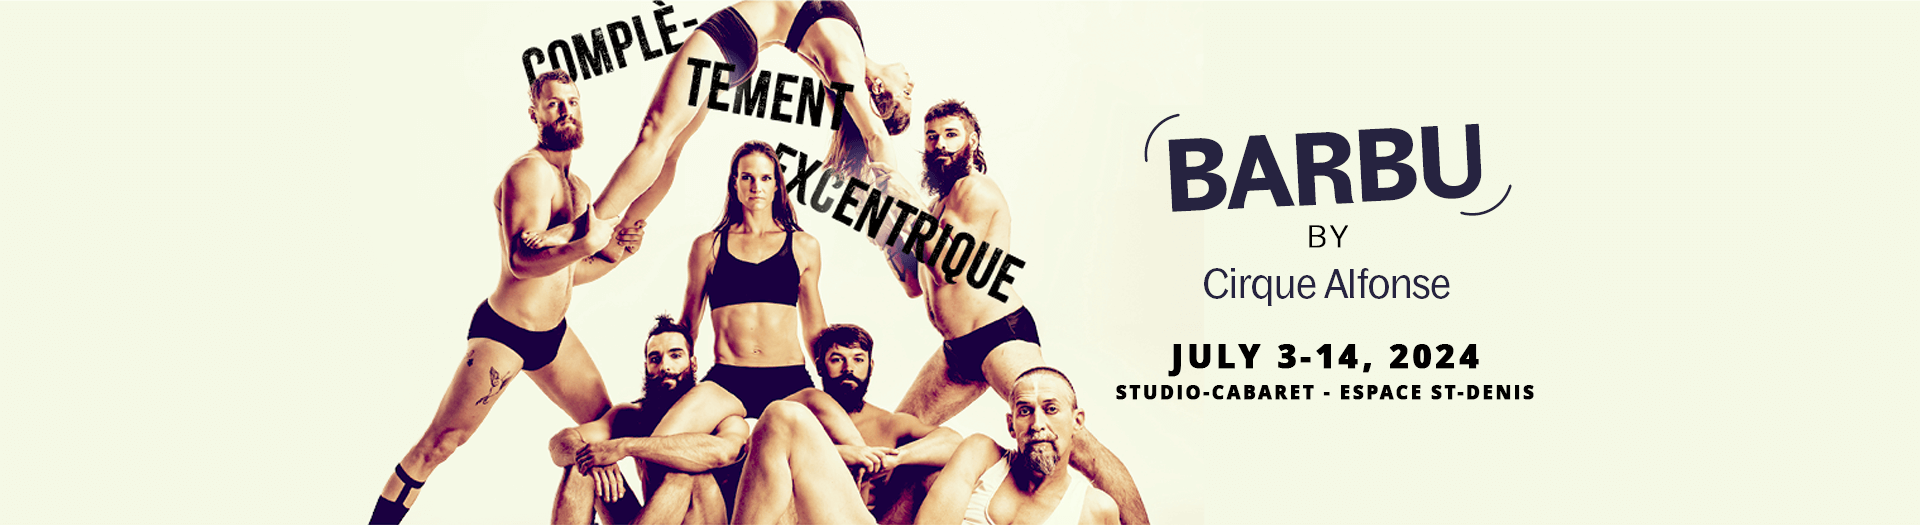 Barbu - Par Cirque Alfonse, Studio-Cabaret - Espace St-Denis, Montréal